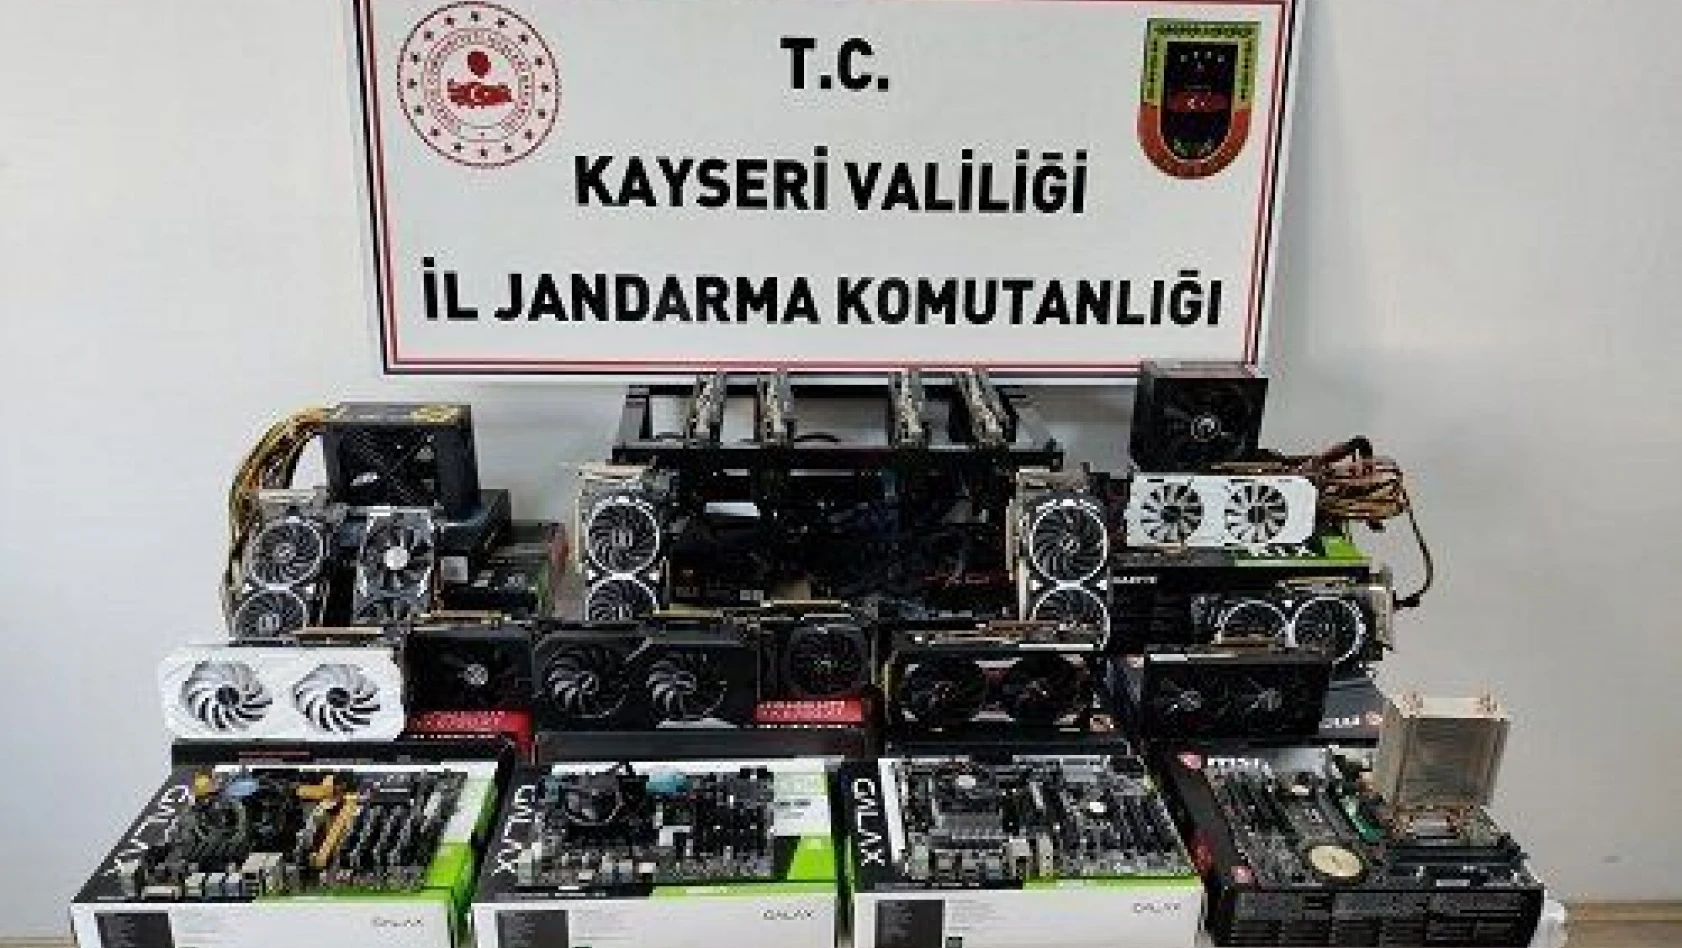 Kayseri'de kaçak kripto para üretimi yapan 2 kişi yakalandı